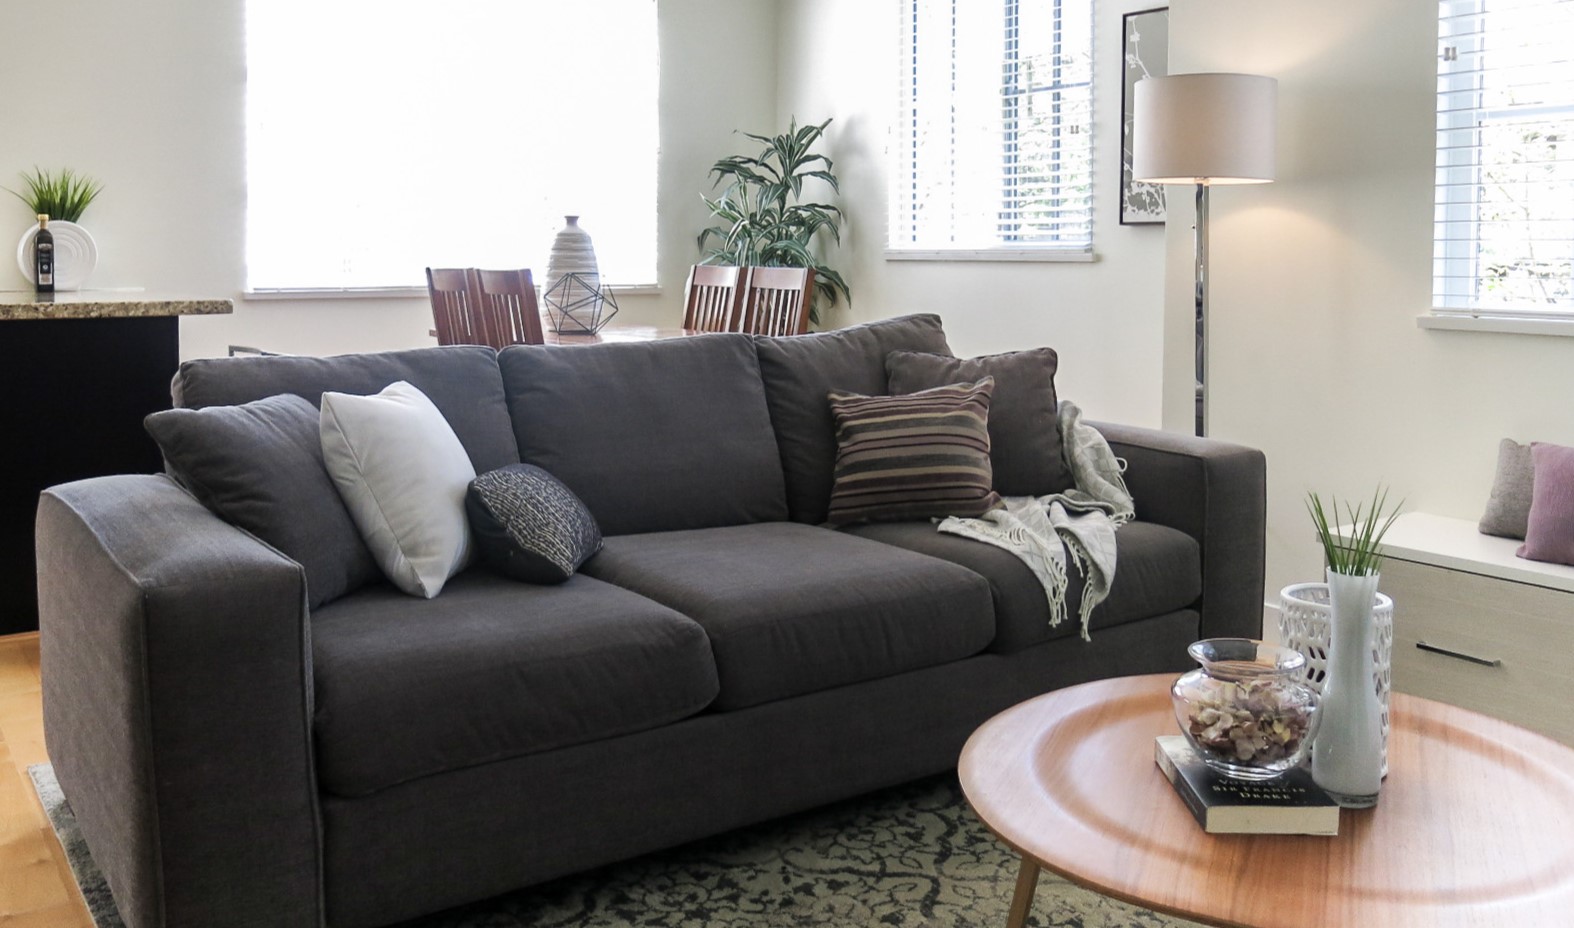 В большой квартире с помощью дивана можно отделить рабочую зону от кухни